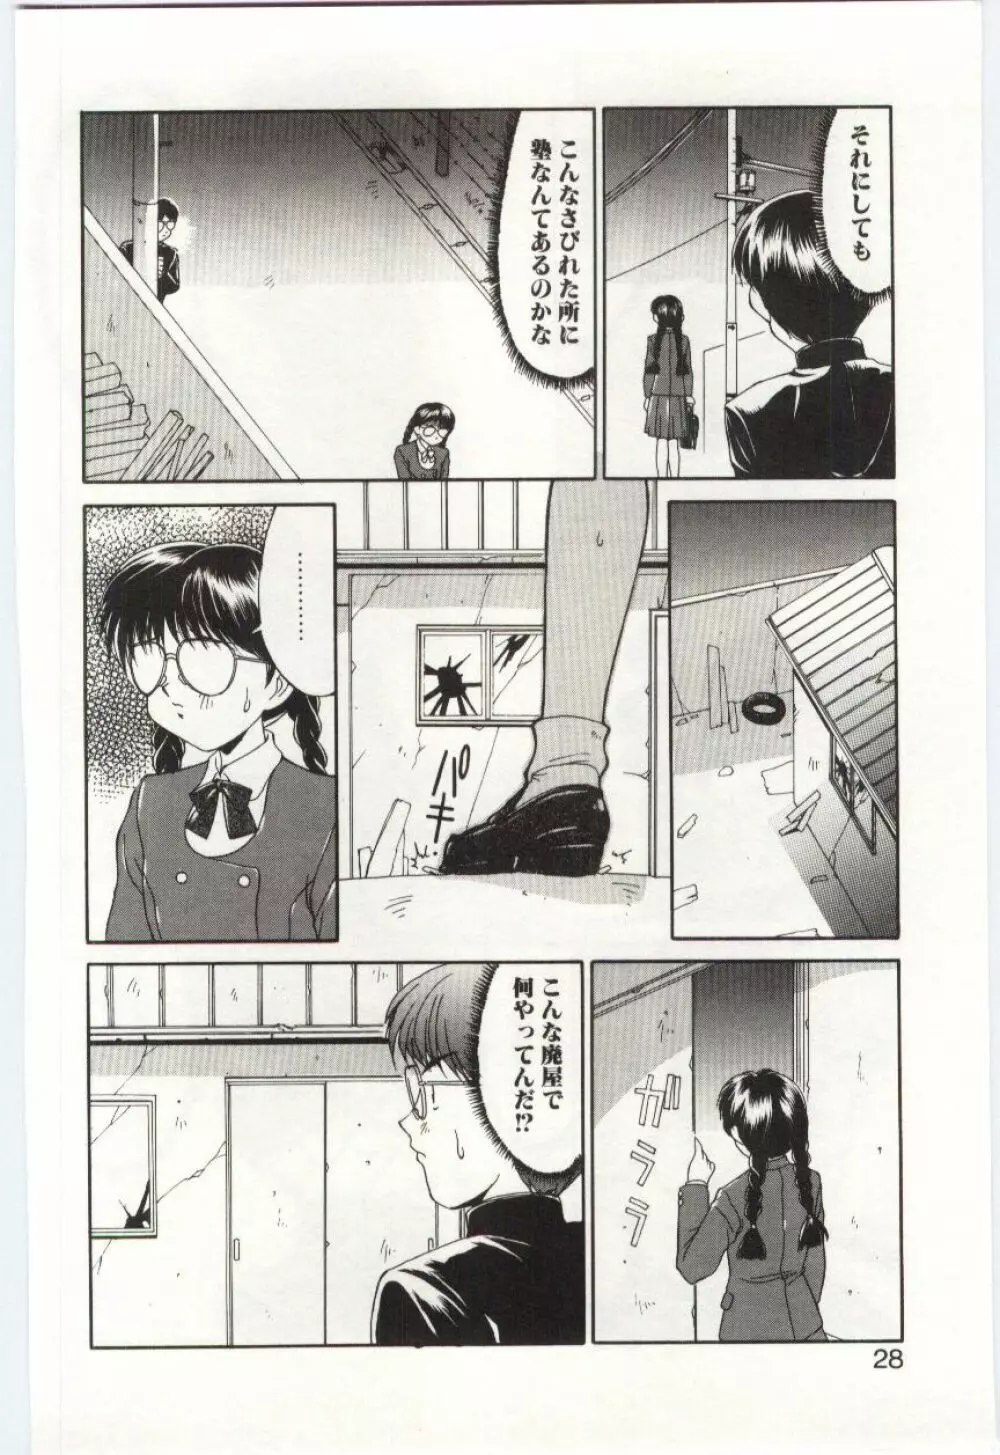 Mizugi Crisis part 1 - JP Page.27